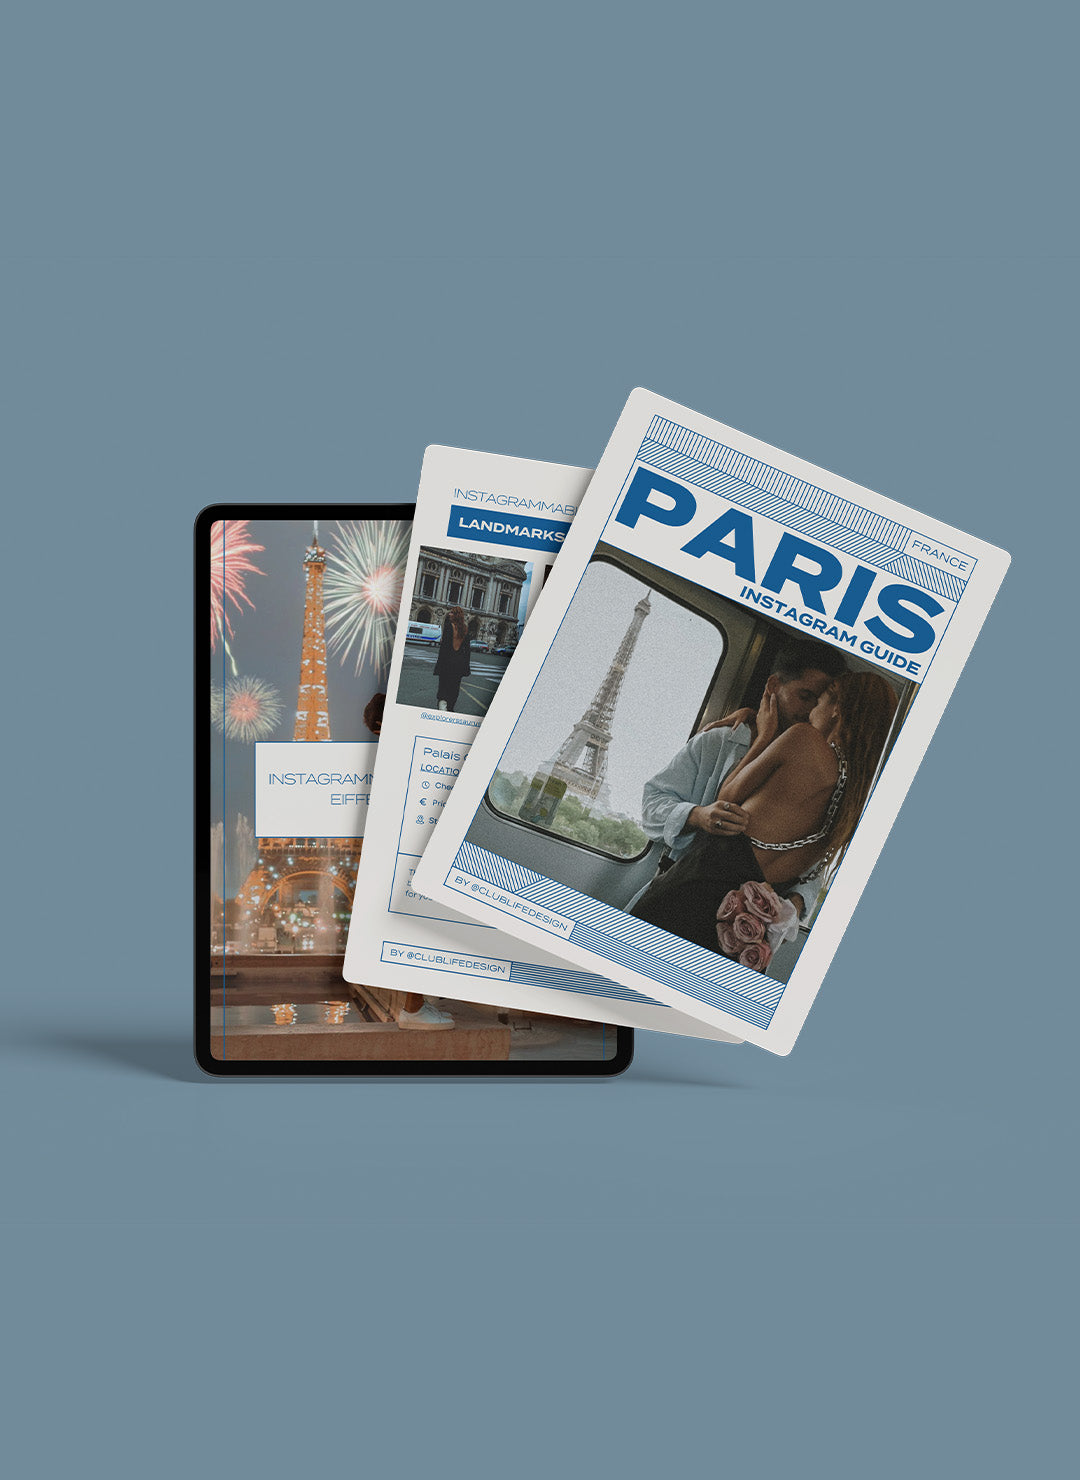 Paris Instagrammable Photo Spots Guide